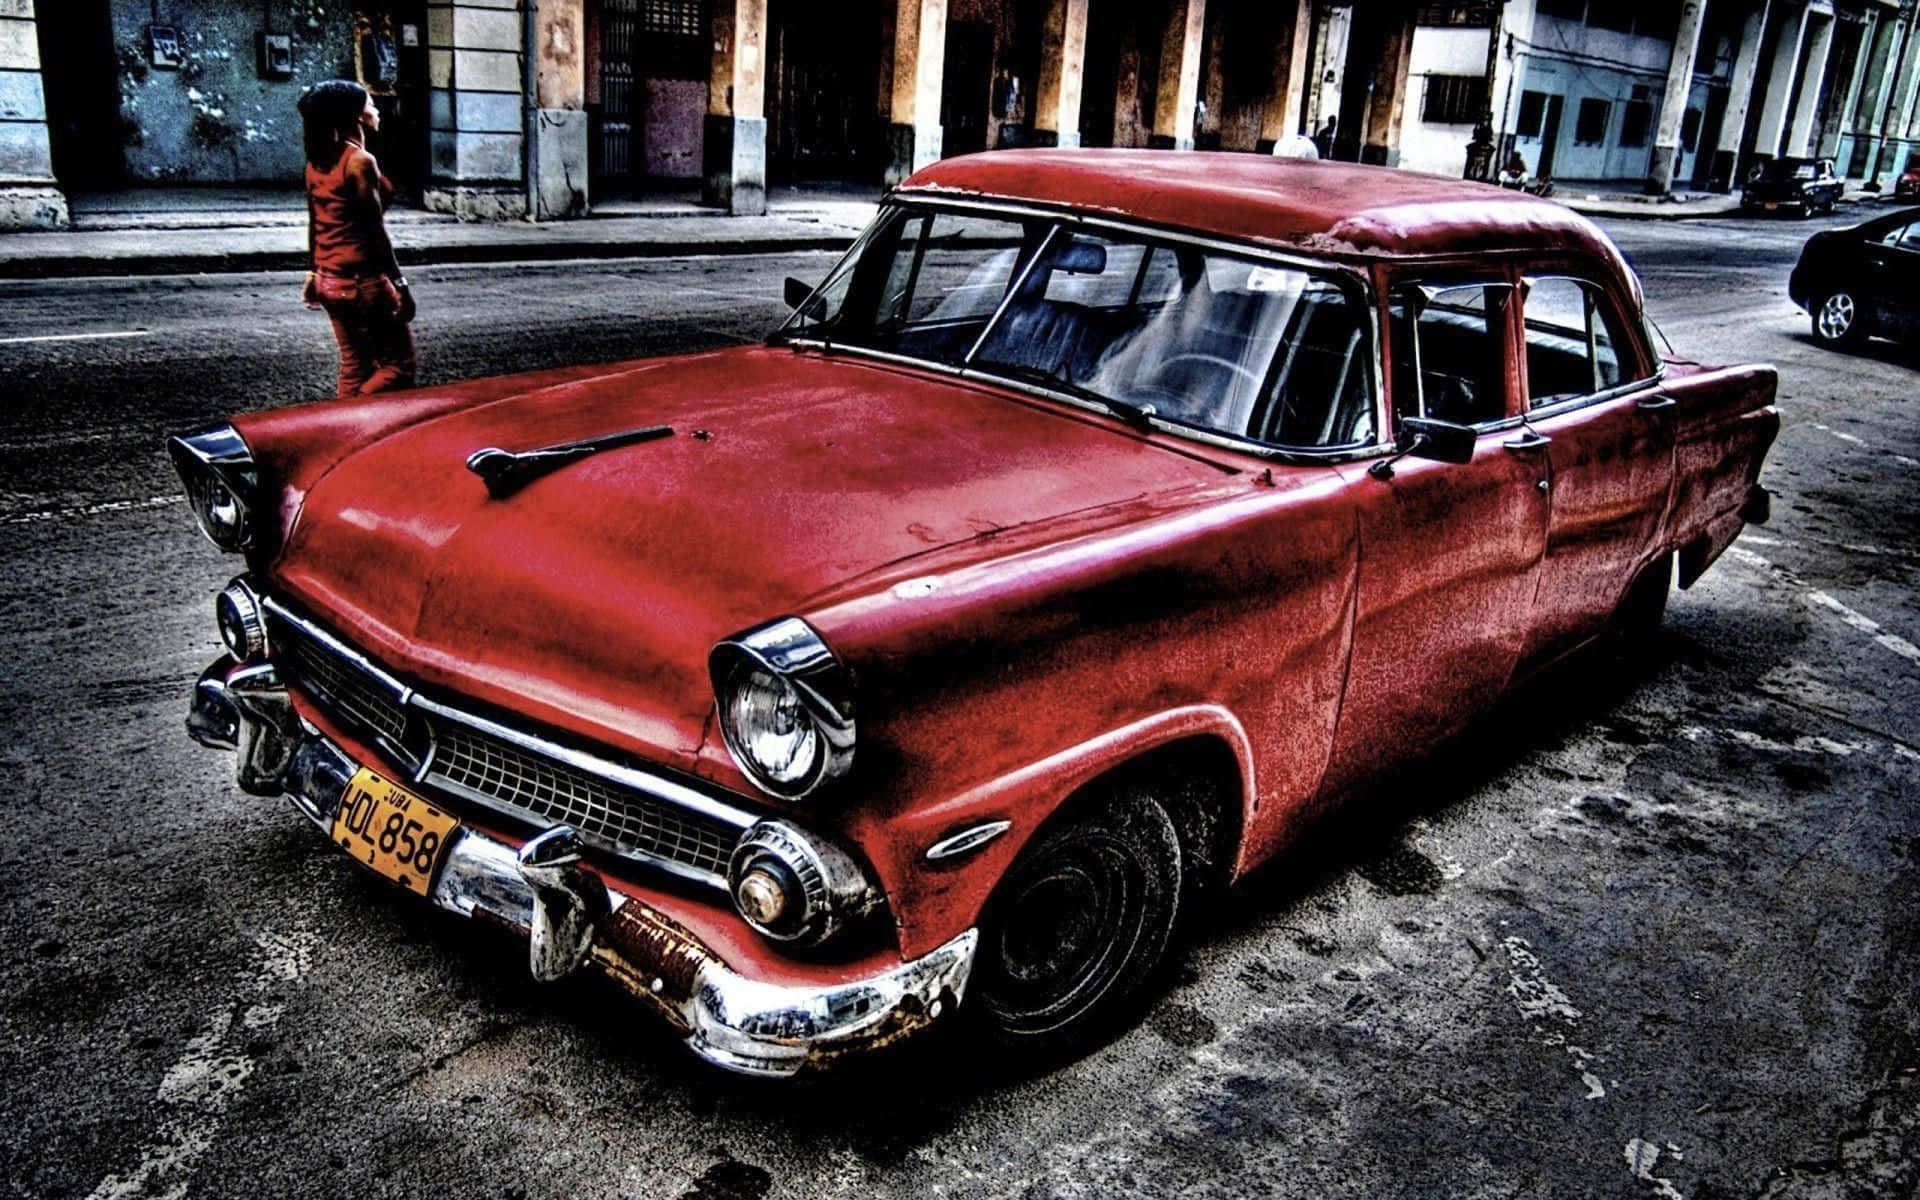 En rød bil er parkeret på gaden i Cuba. Wallpaper